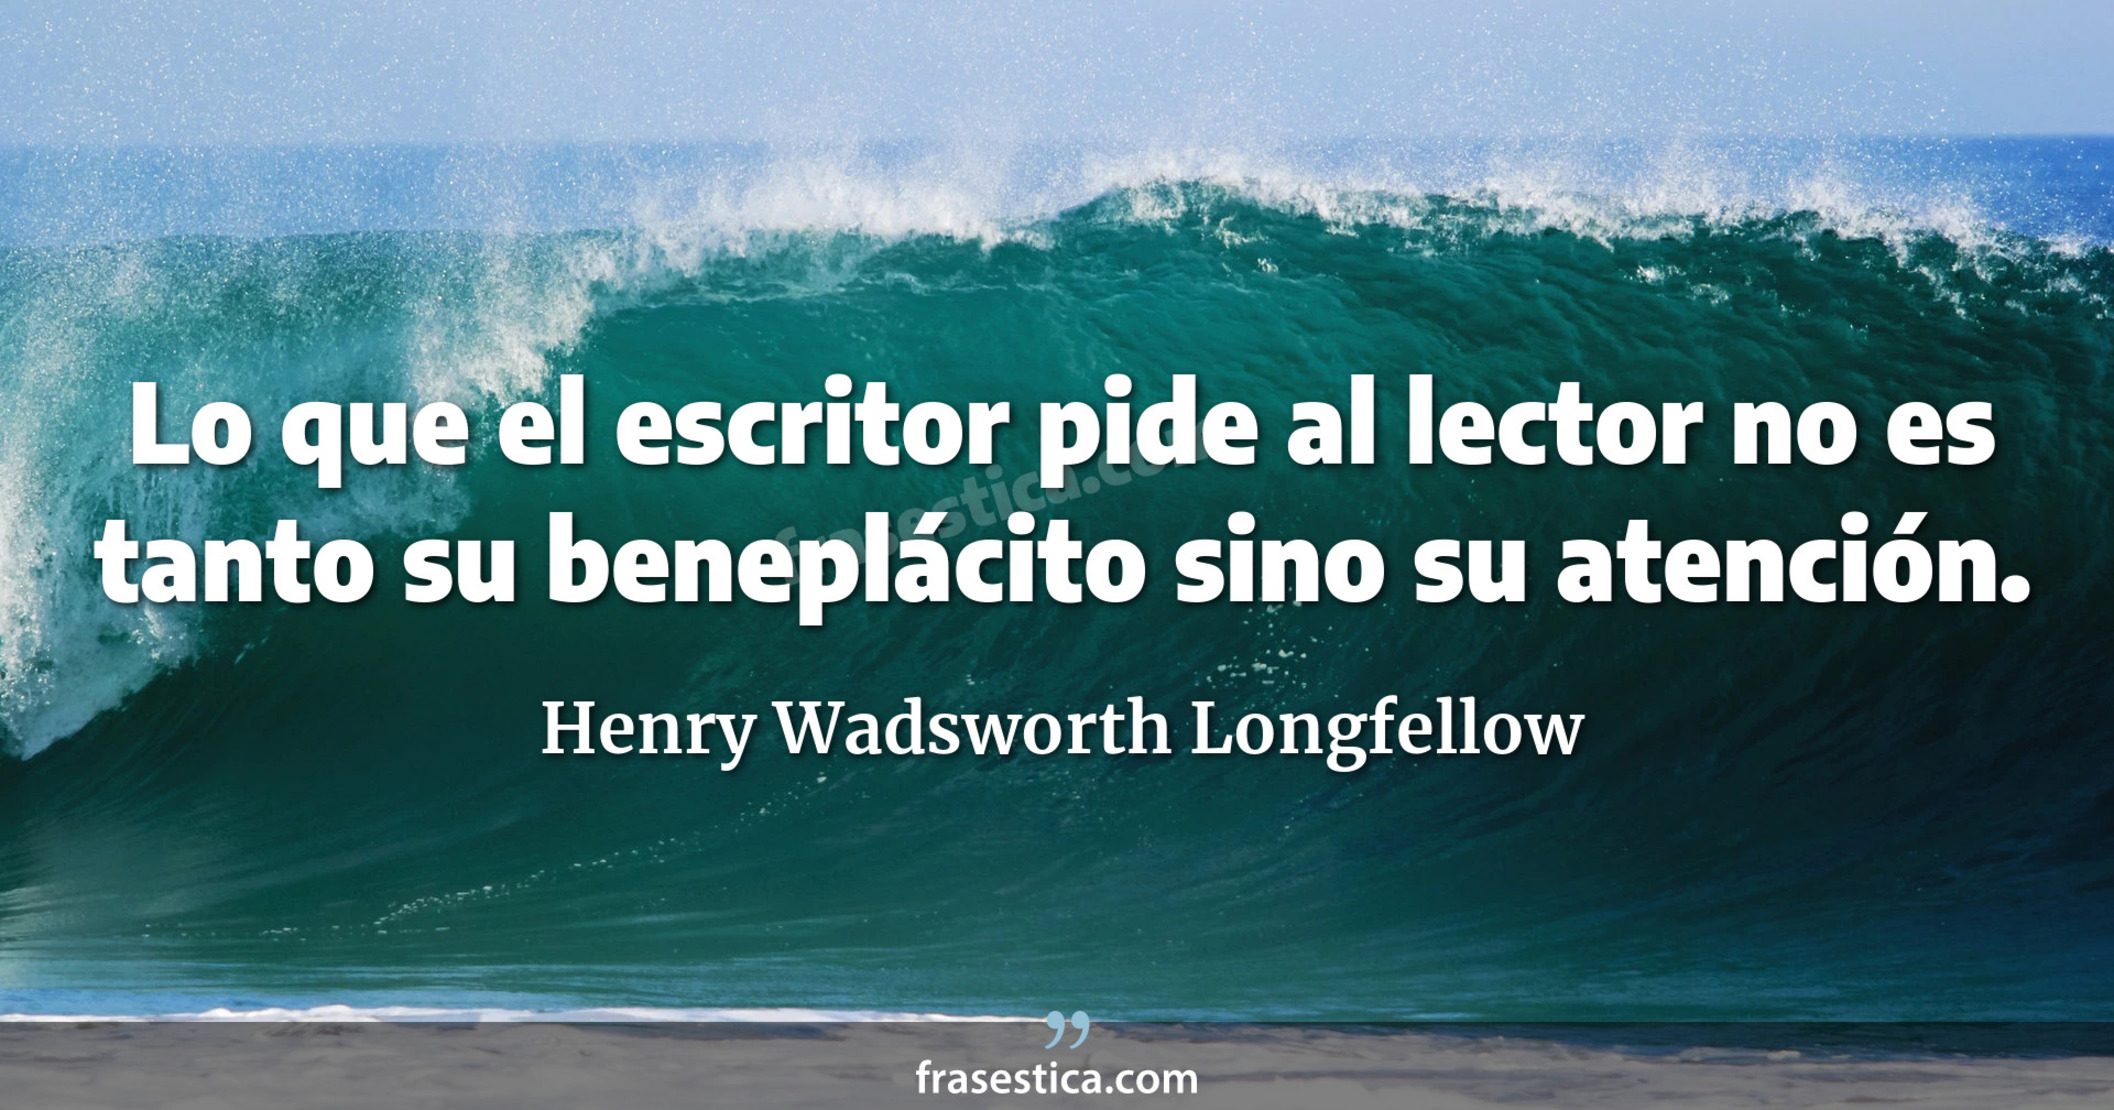 Lo que el escritor pide al lector no es tanto su beneplácito sino su atención. - Henry Wadsworth Longfellow